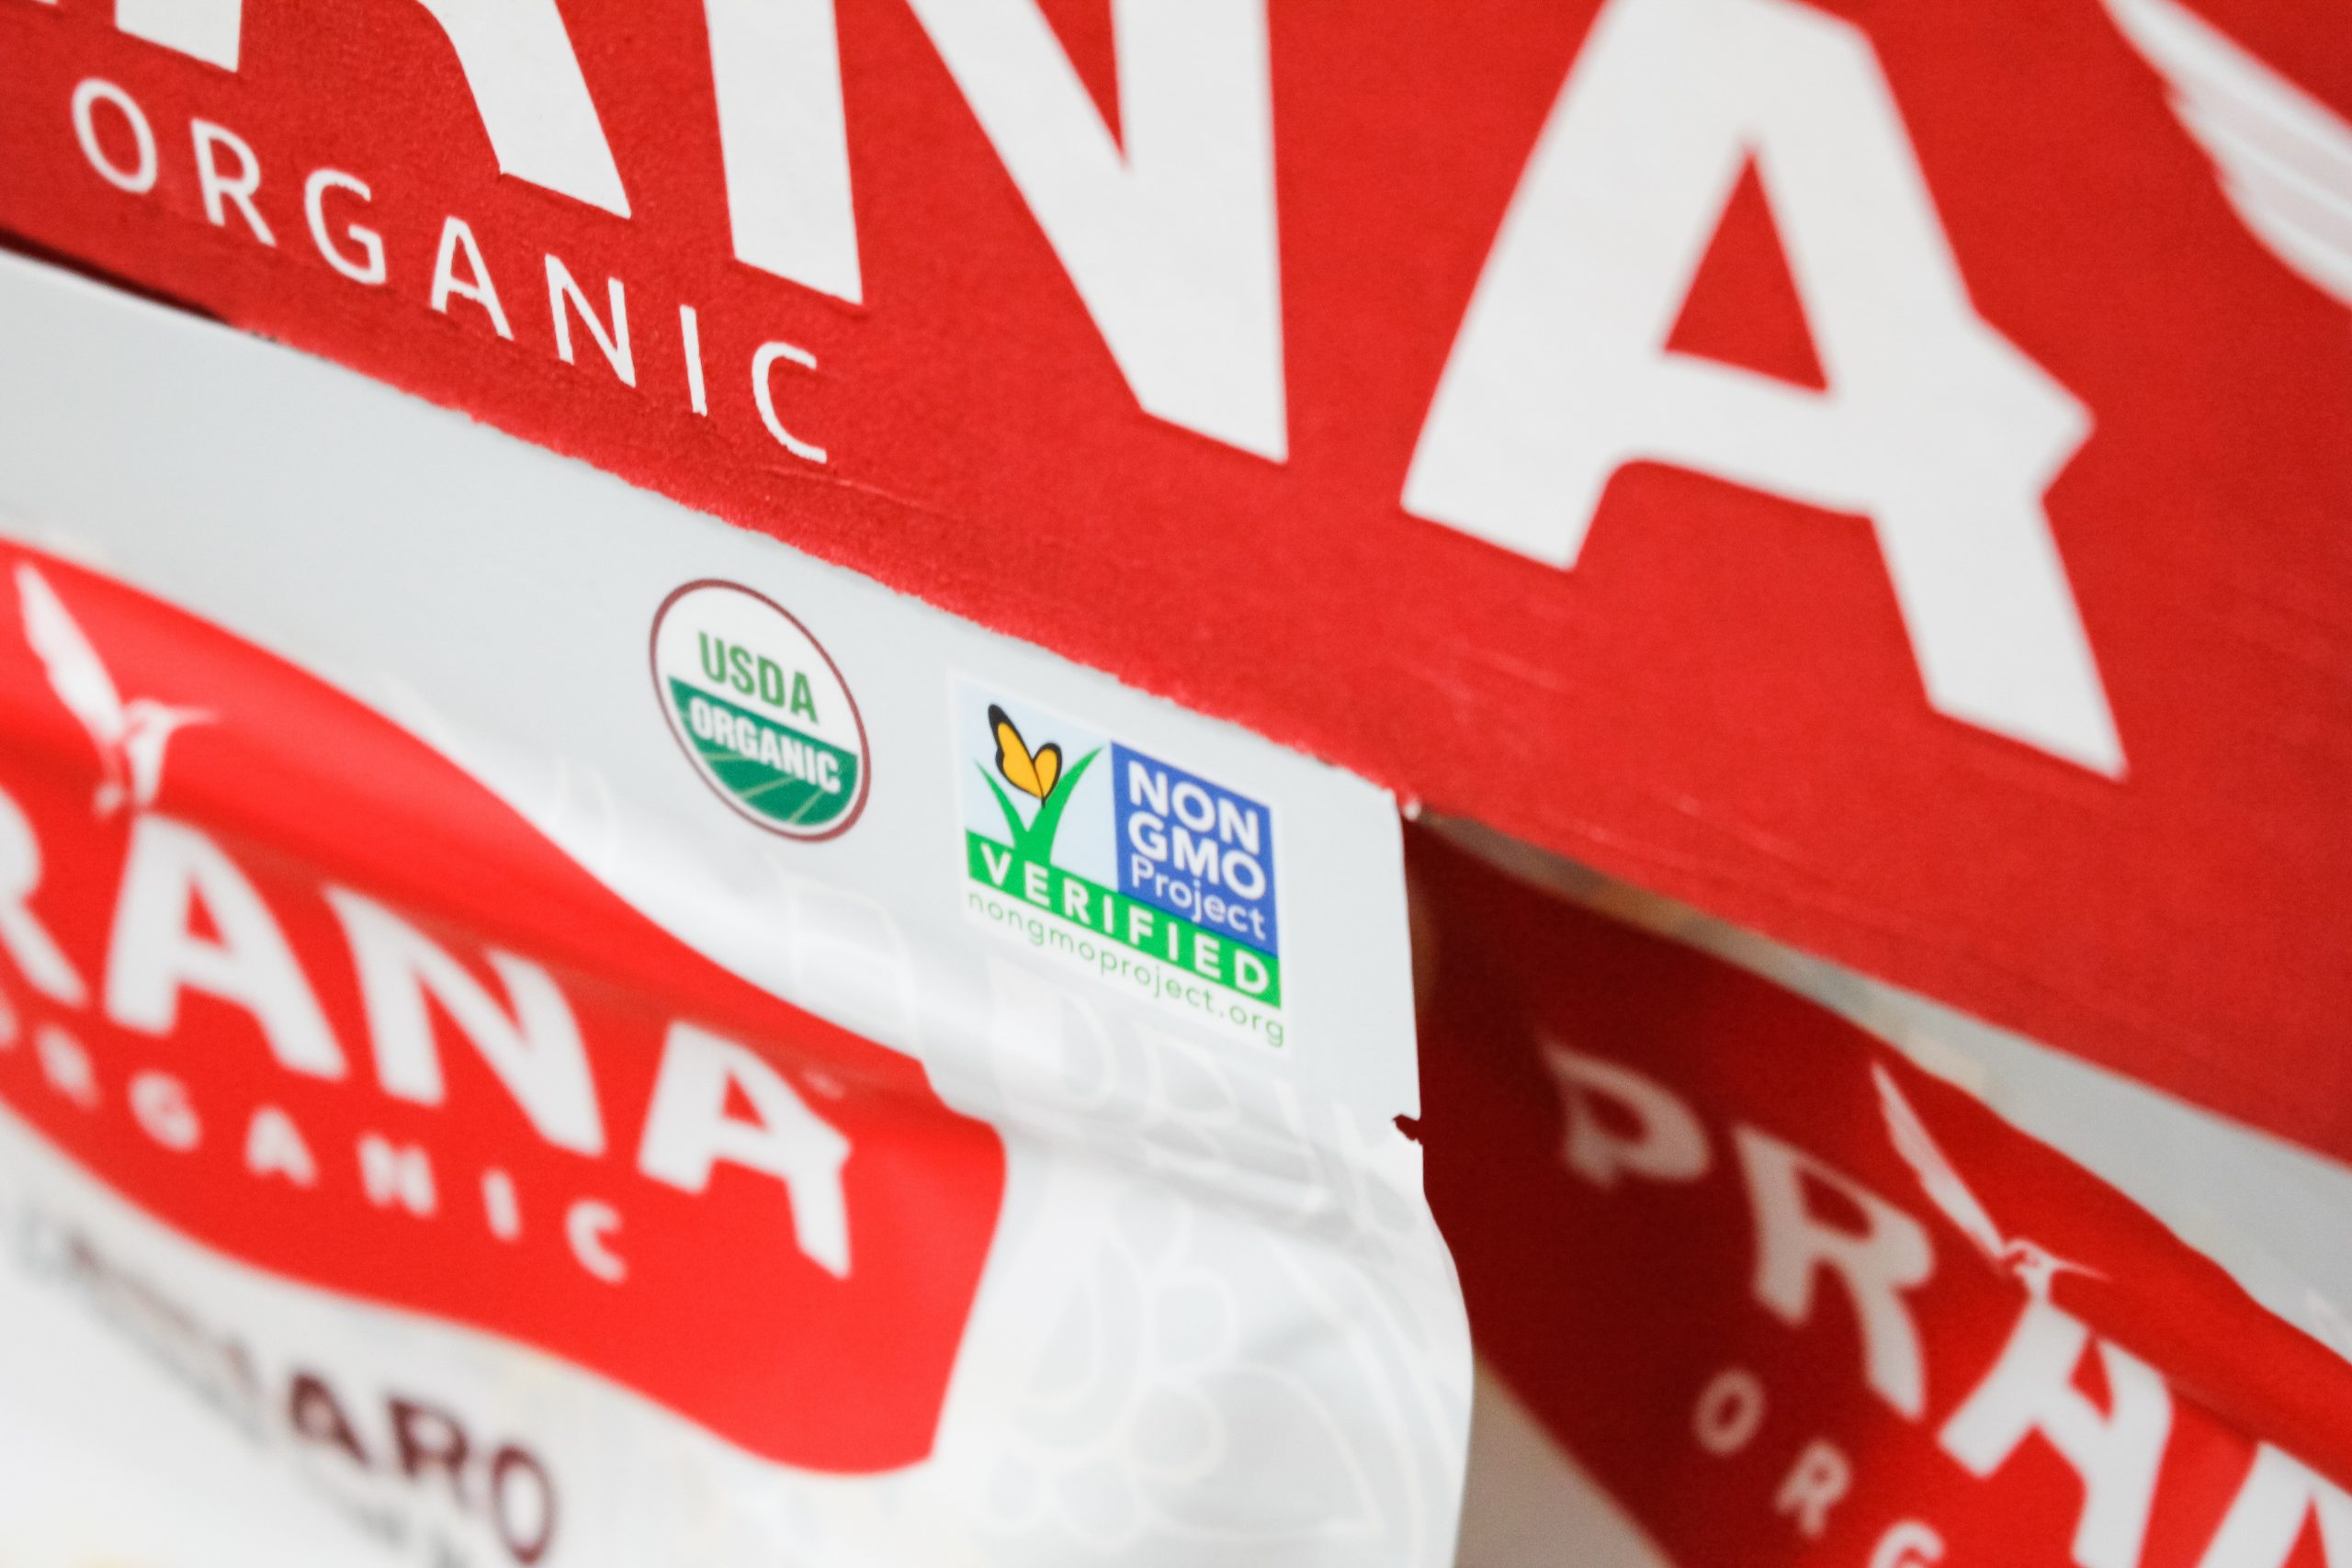 Organic and Non-GMO food label